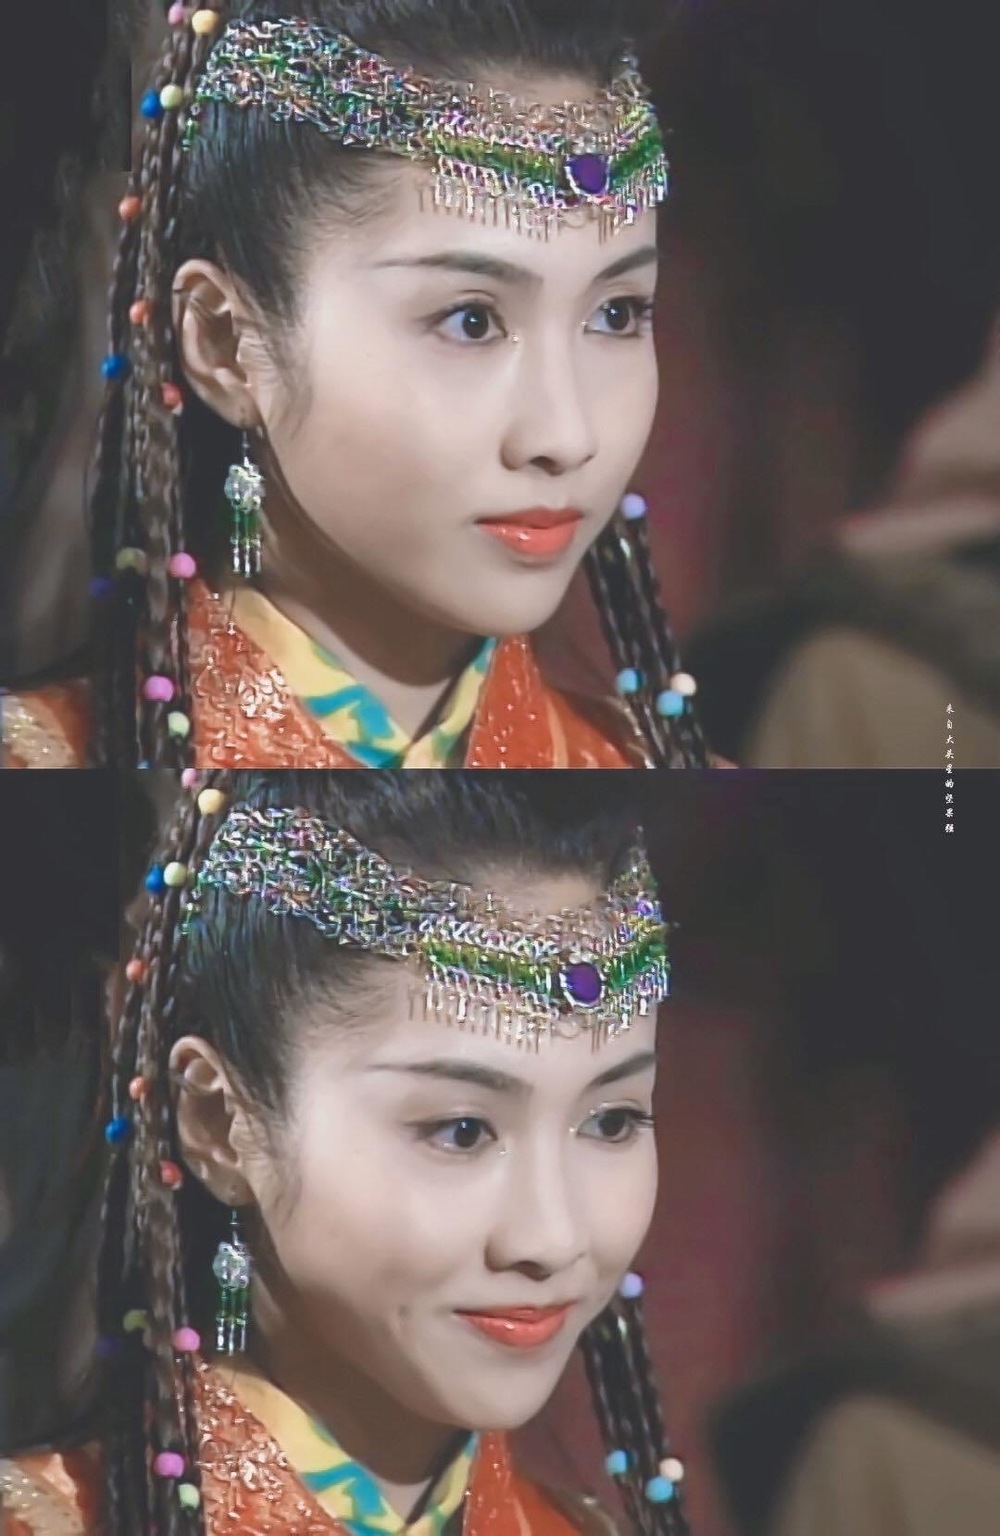  
Tạo hình của Lê Tư trong các bộ phim cổ trang được xếp vào hàng đẹp huyền thoại. (Ảnh: Weibo)